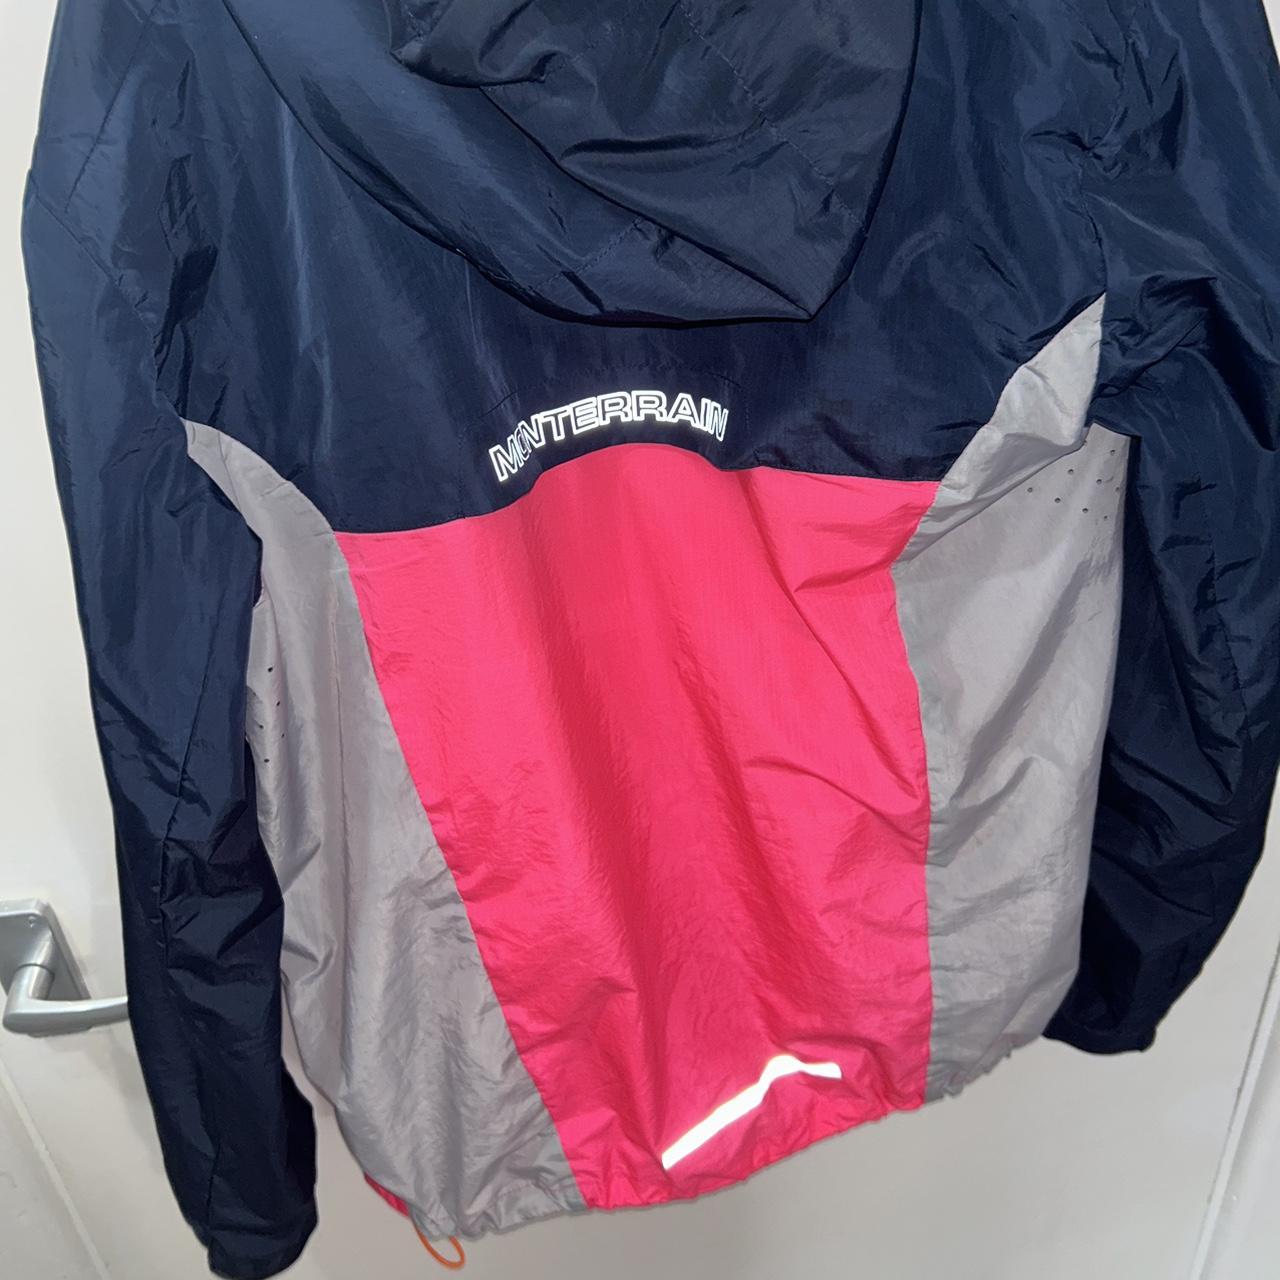 Men’s Monterrain jacket waterproof windproof pink /... - Depop